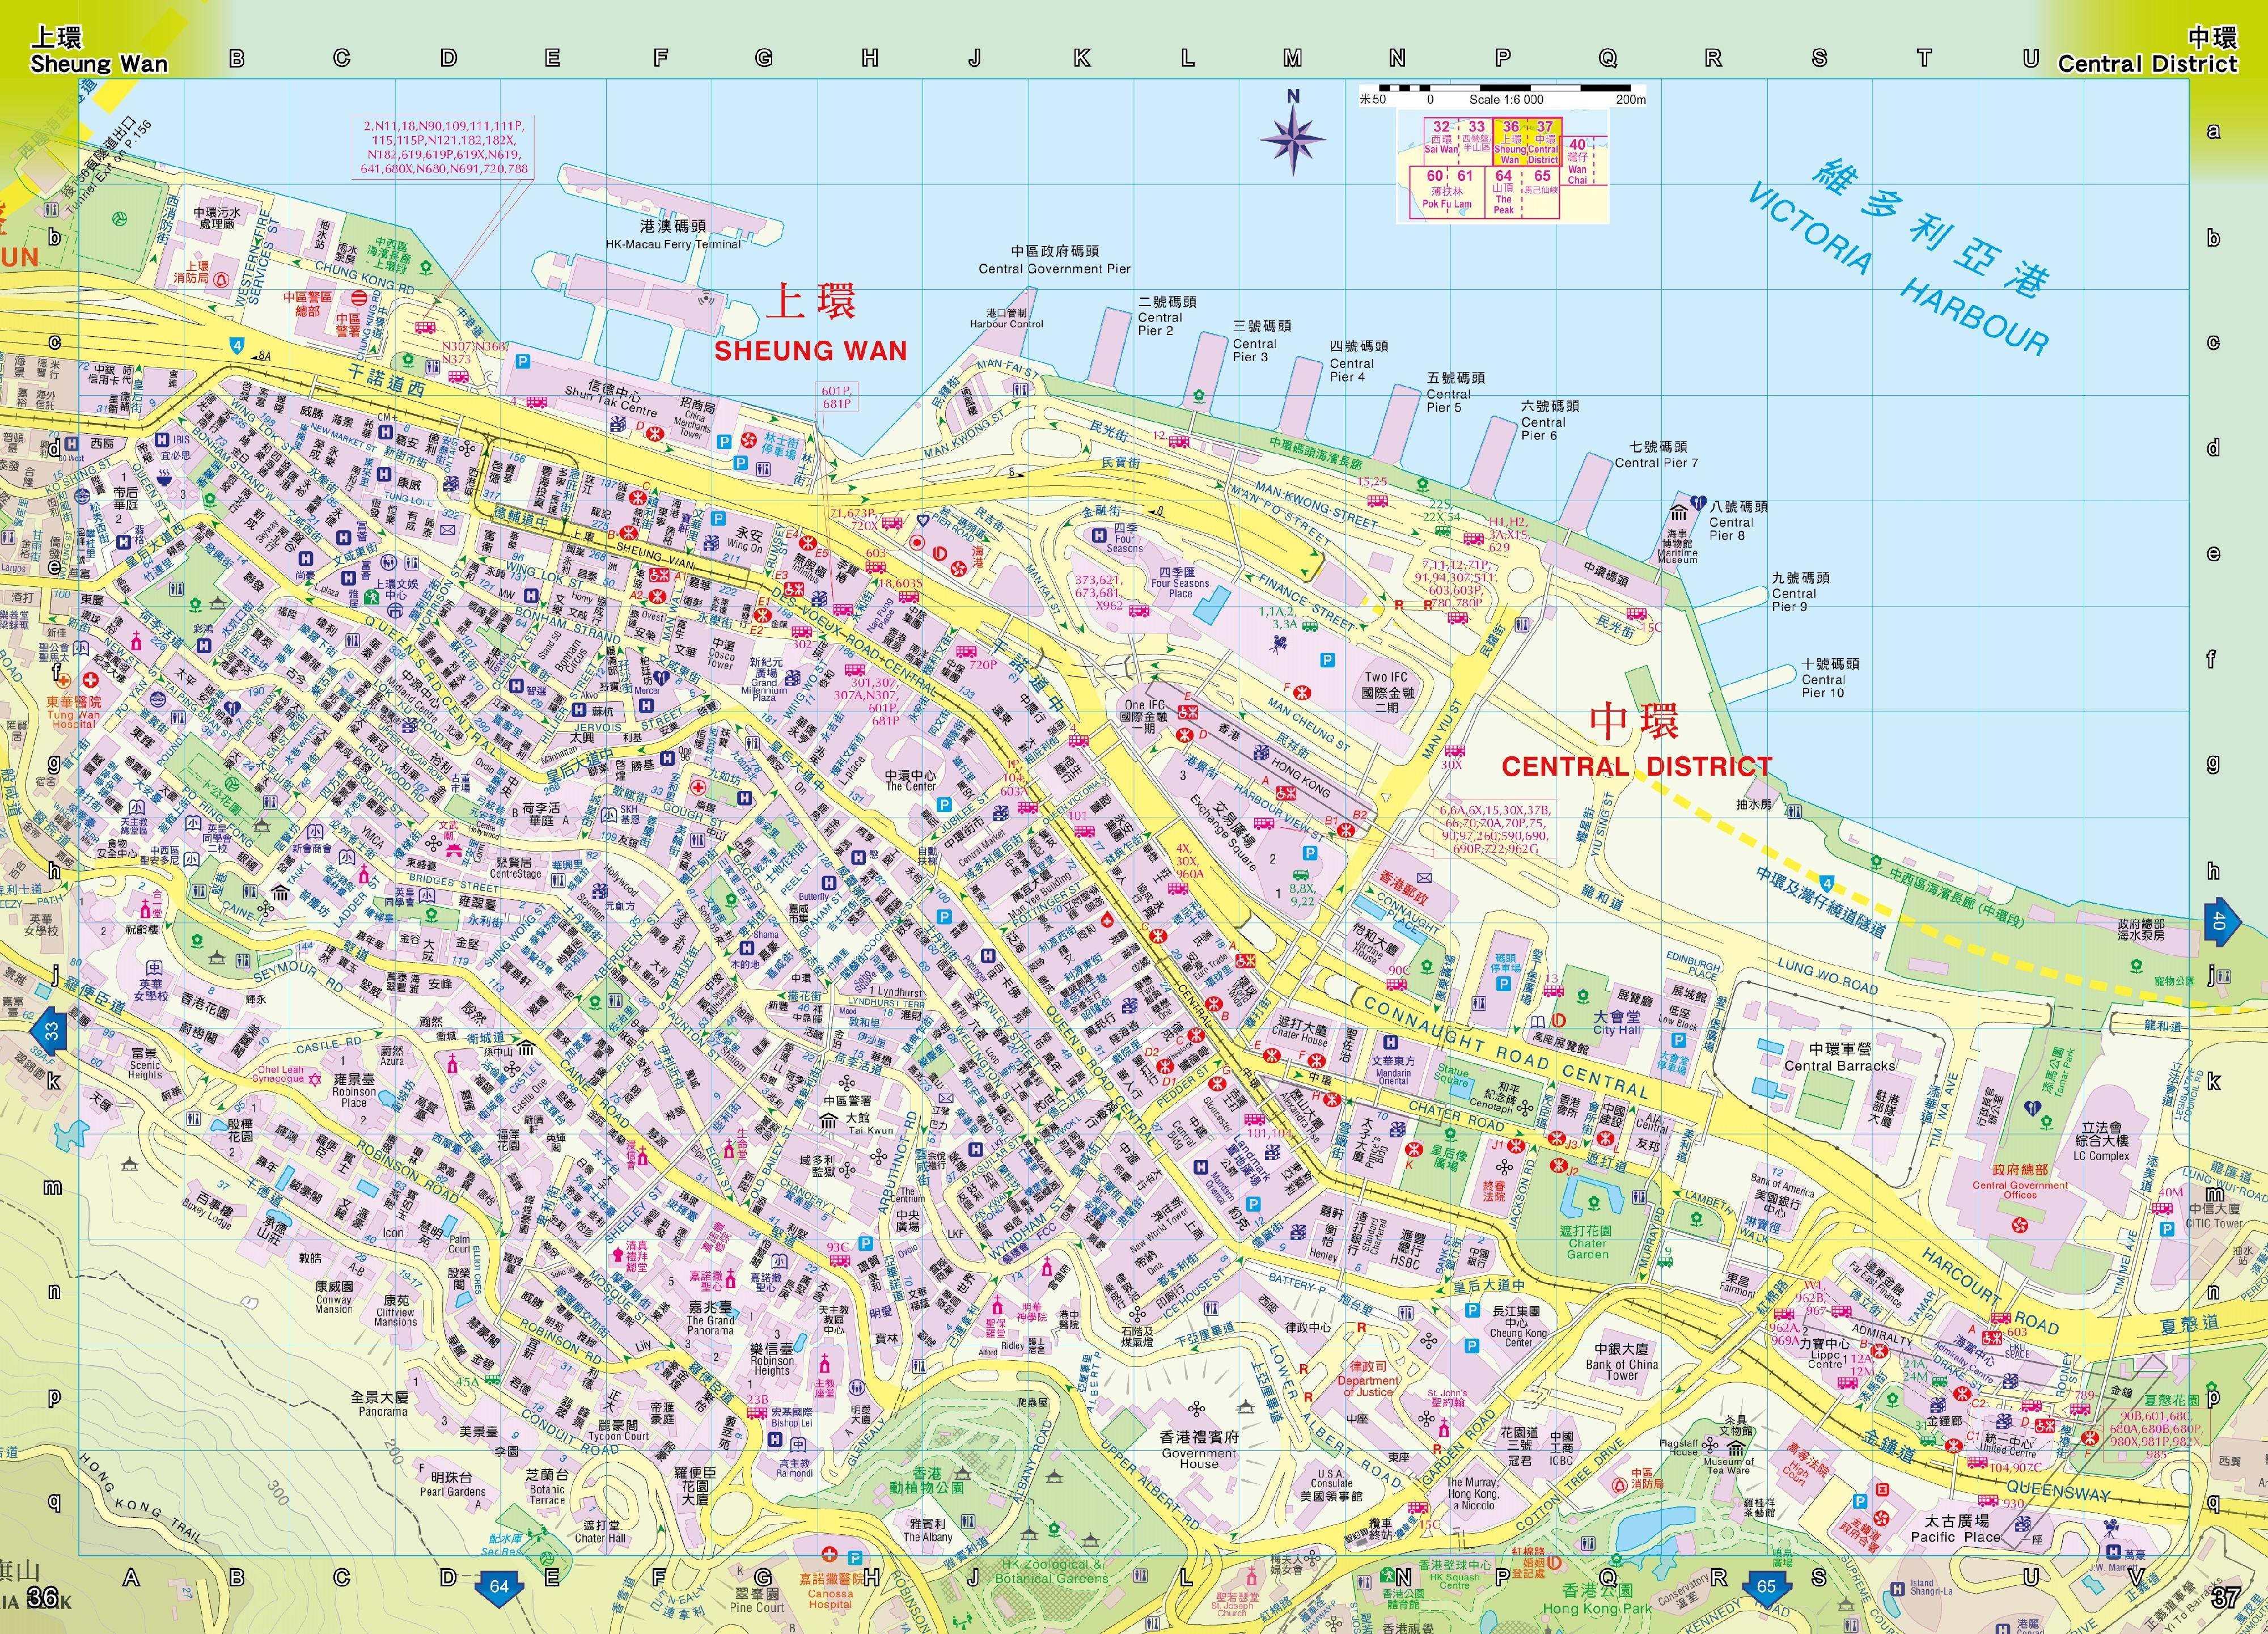 二○二二年影像地图版《香港街》今日（一月二十五日）起公开发售。新版《香港街》载有详尽的香港地图。图示载有中环及上环地理资讯的页面。